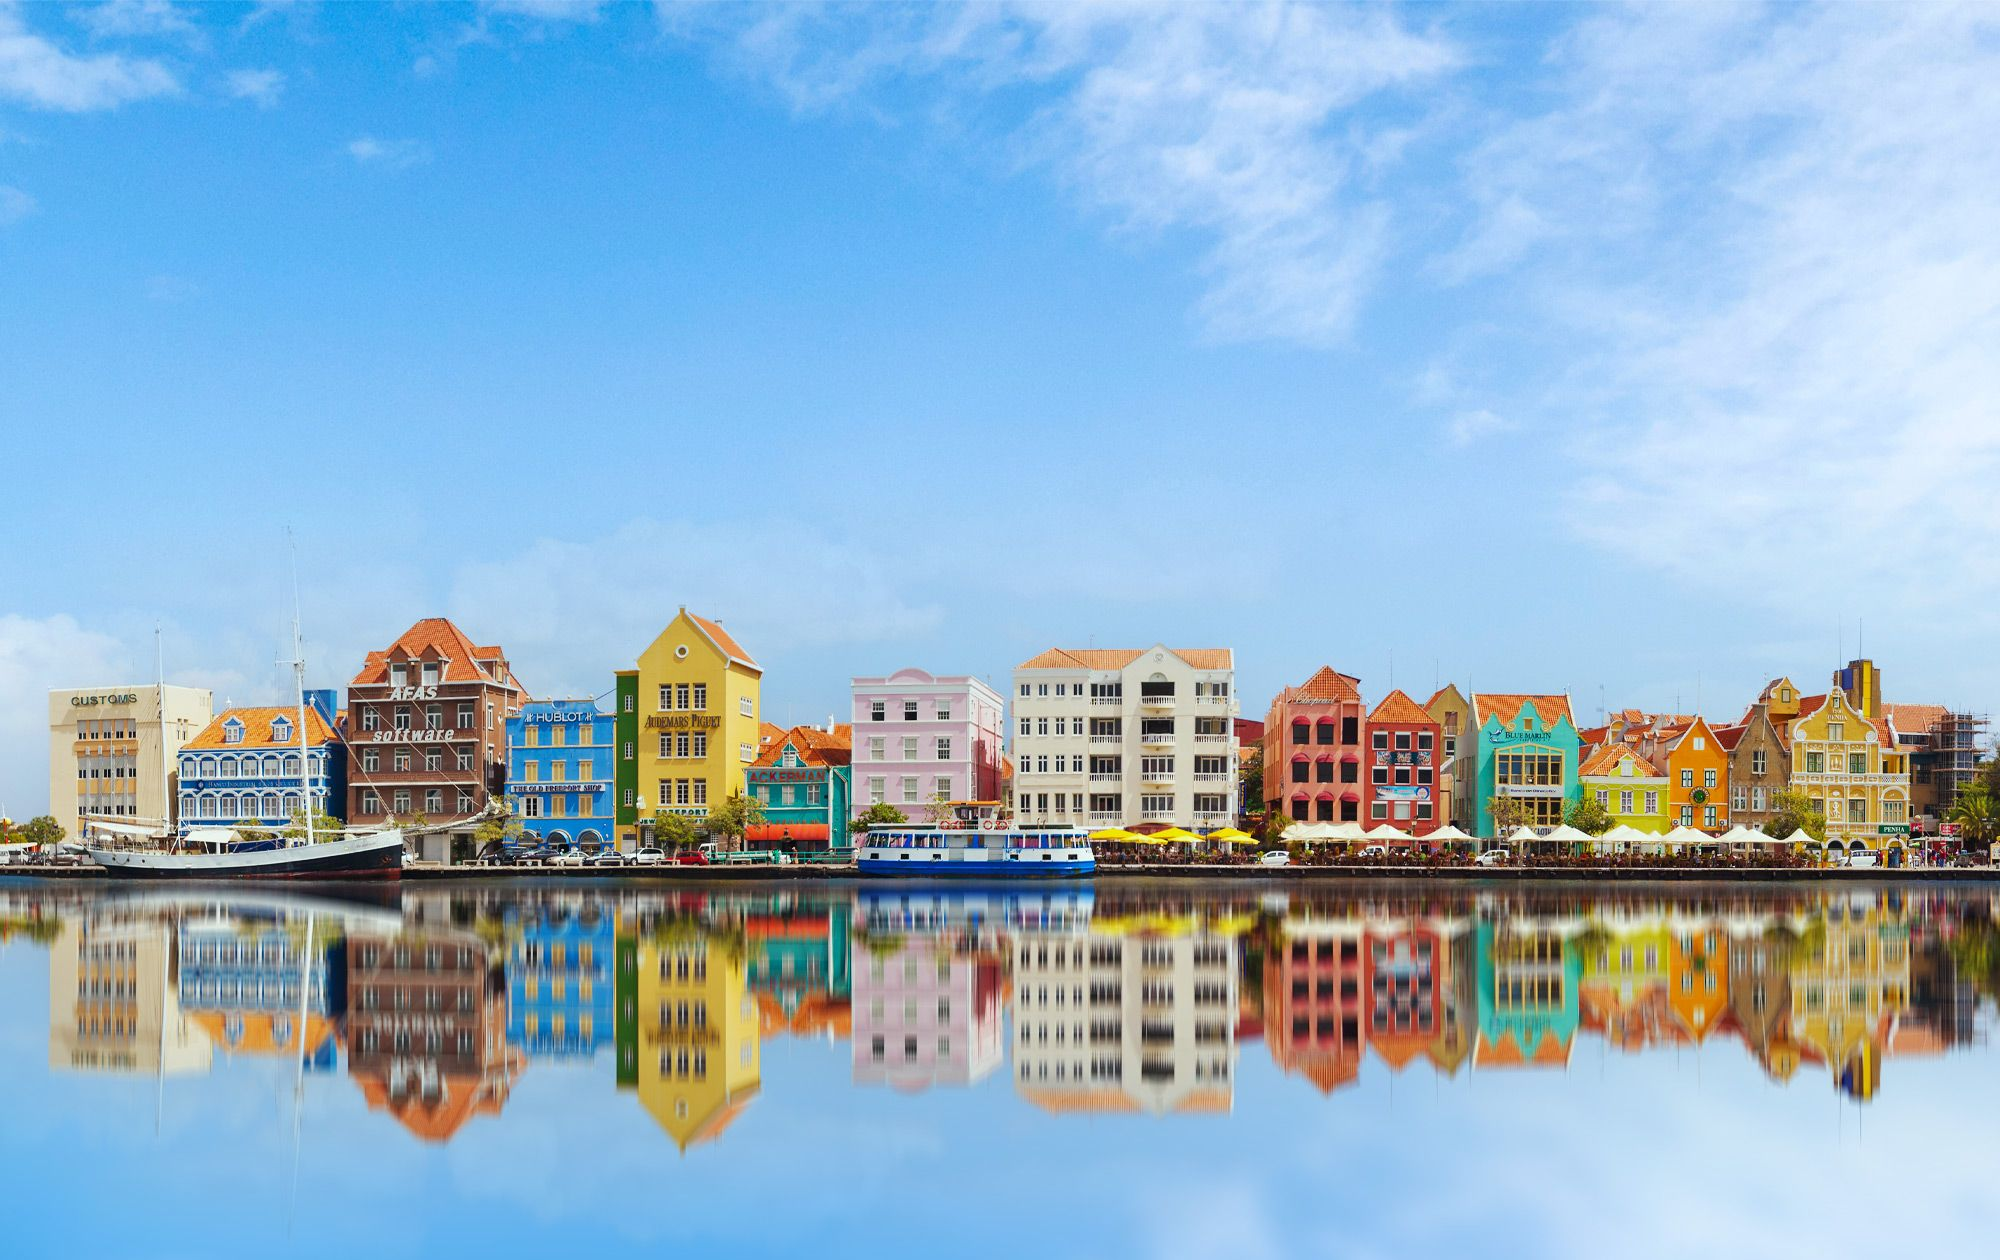 Les incontournables de Curaçao : plages, culture et aventures